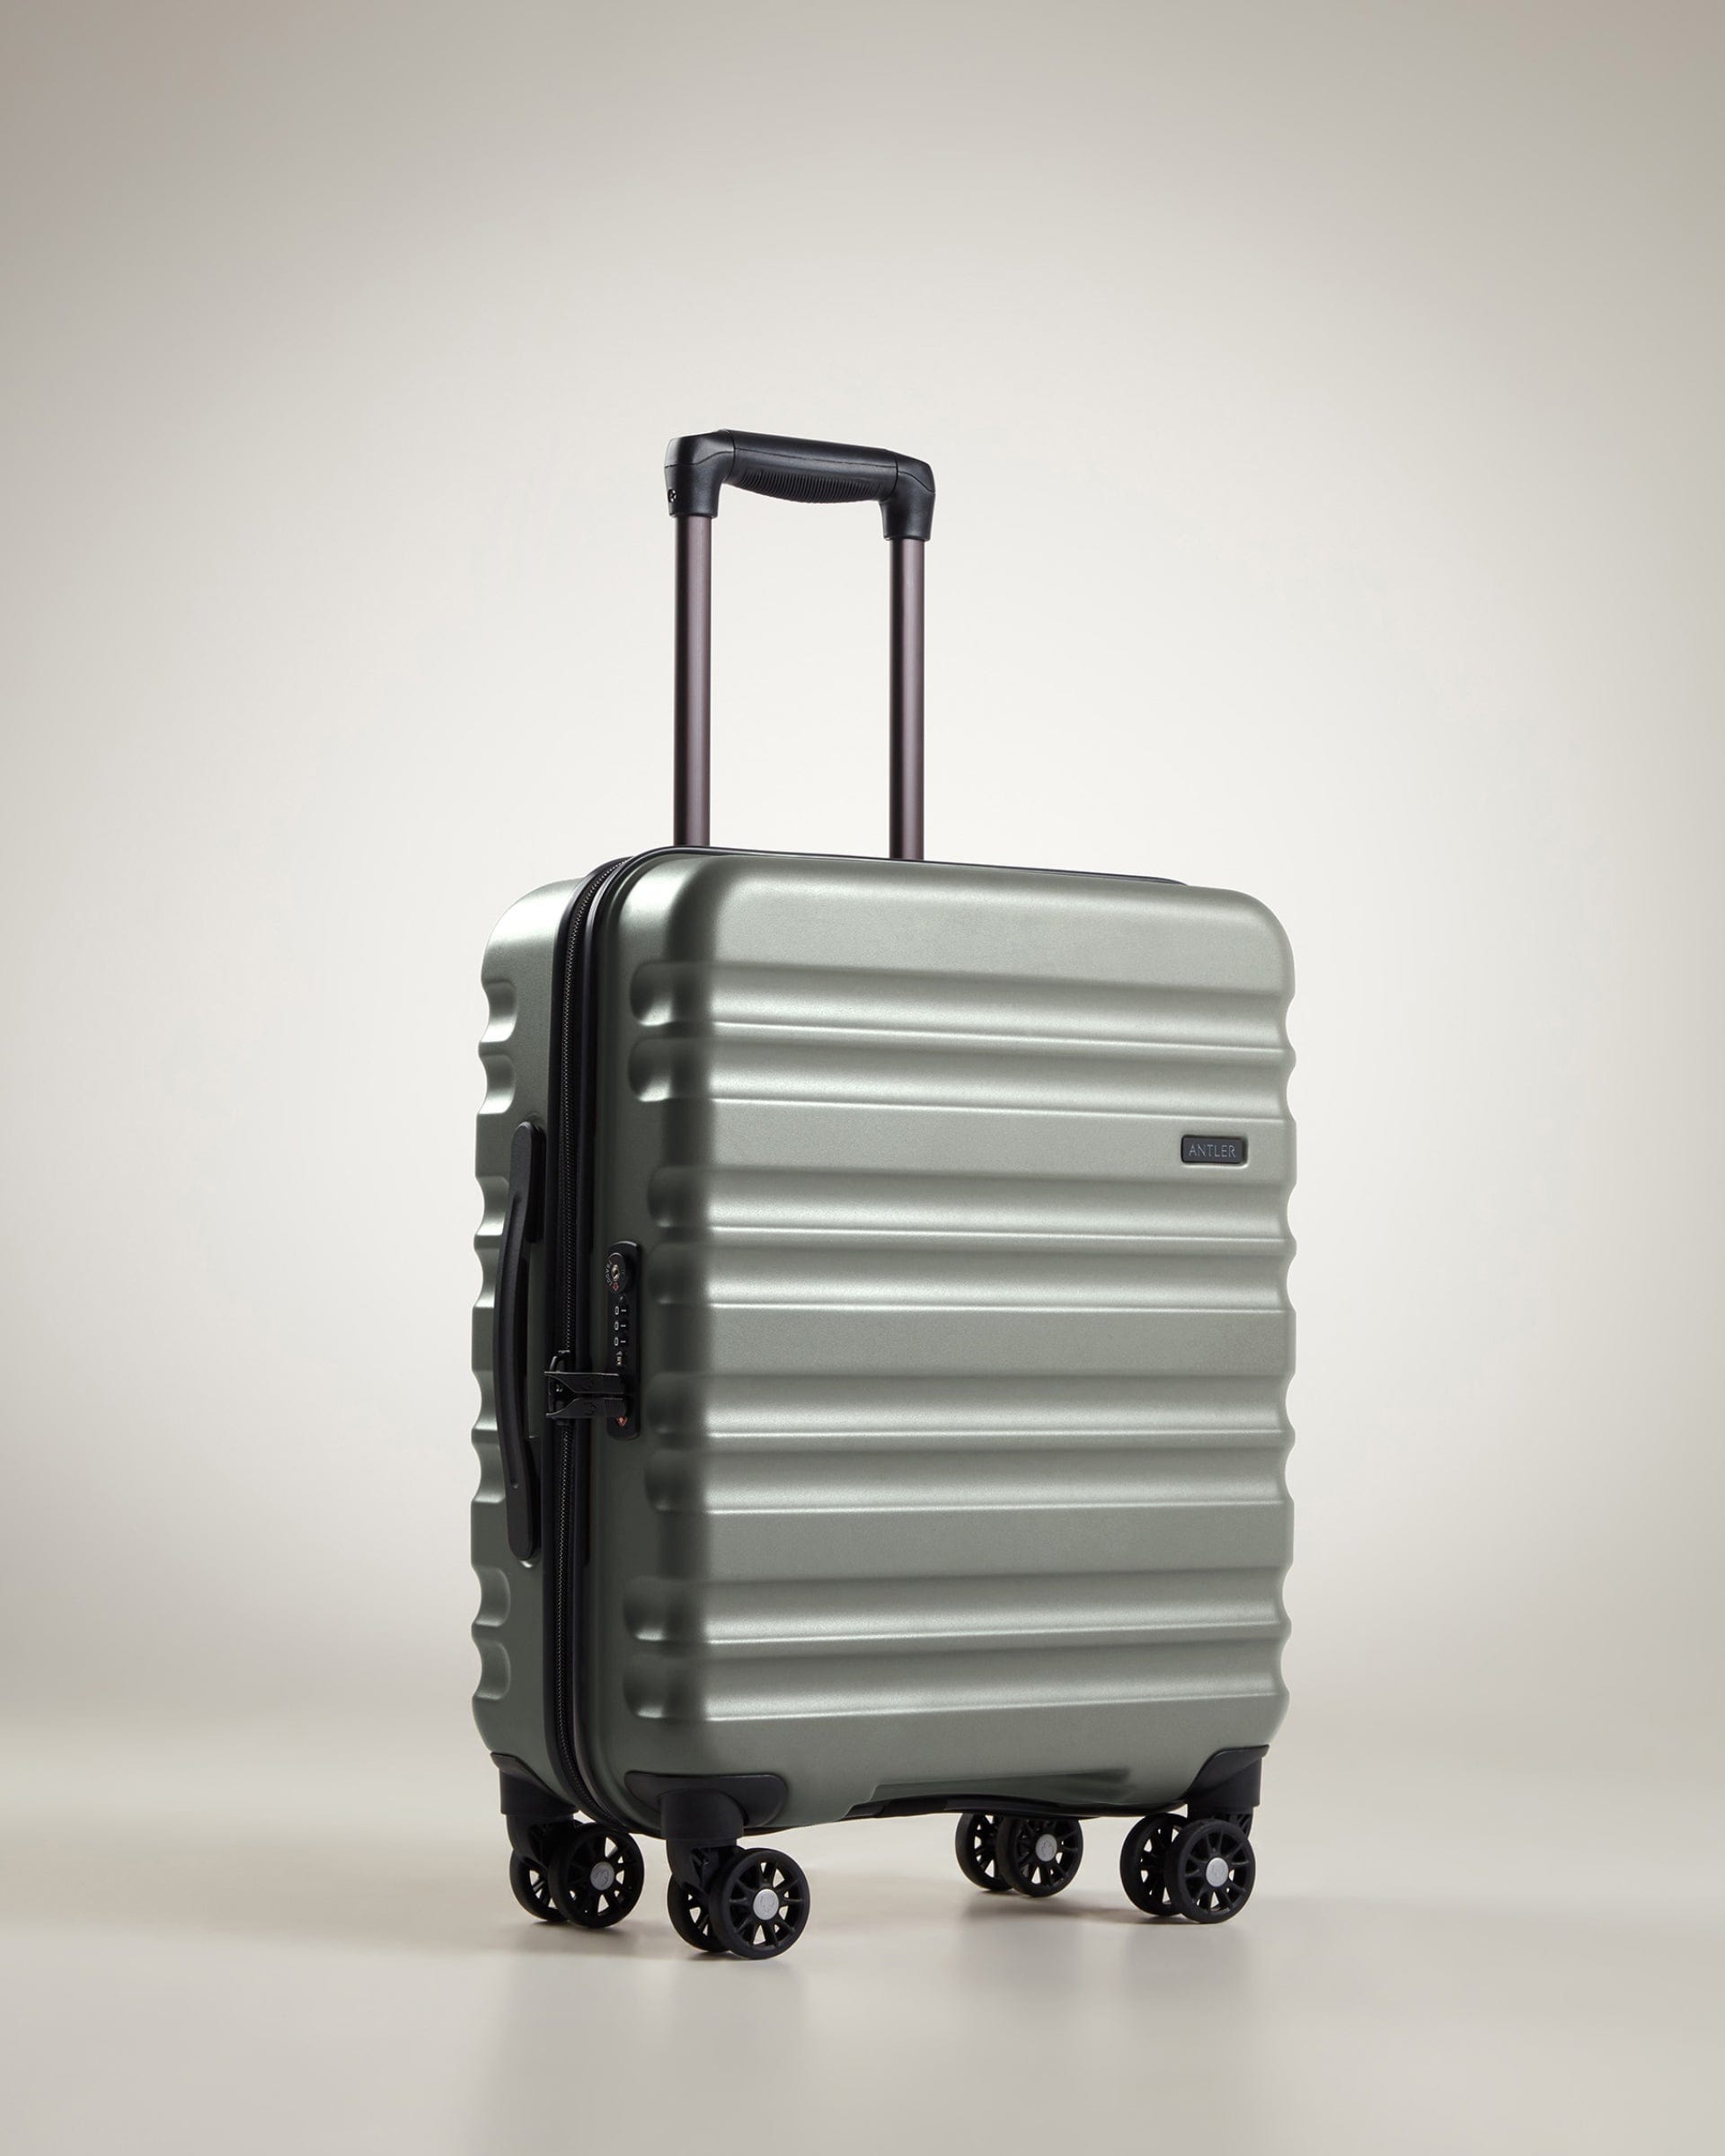 Antler Luggage -  Clifton cabin in sage - Hard Suitcases Clifton 55x40x20cm Cabin Suitcase Sage (Green) | Hard Suitcase | Antler UK